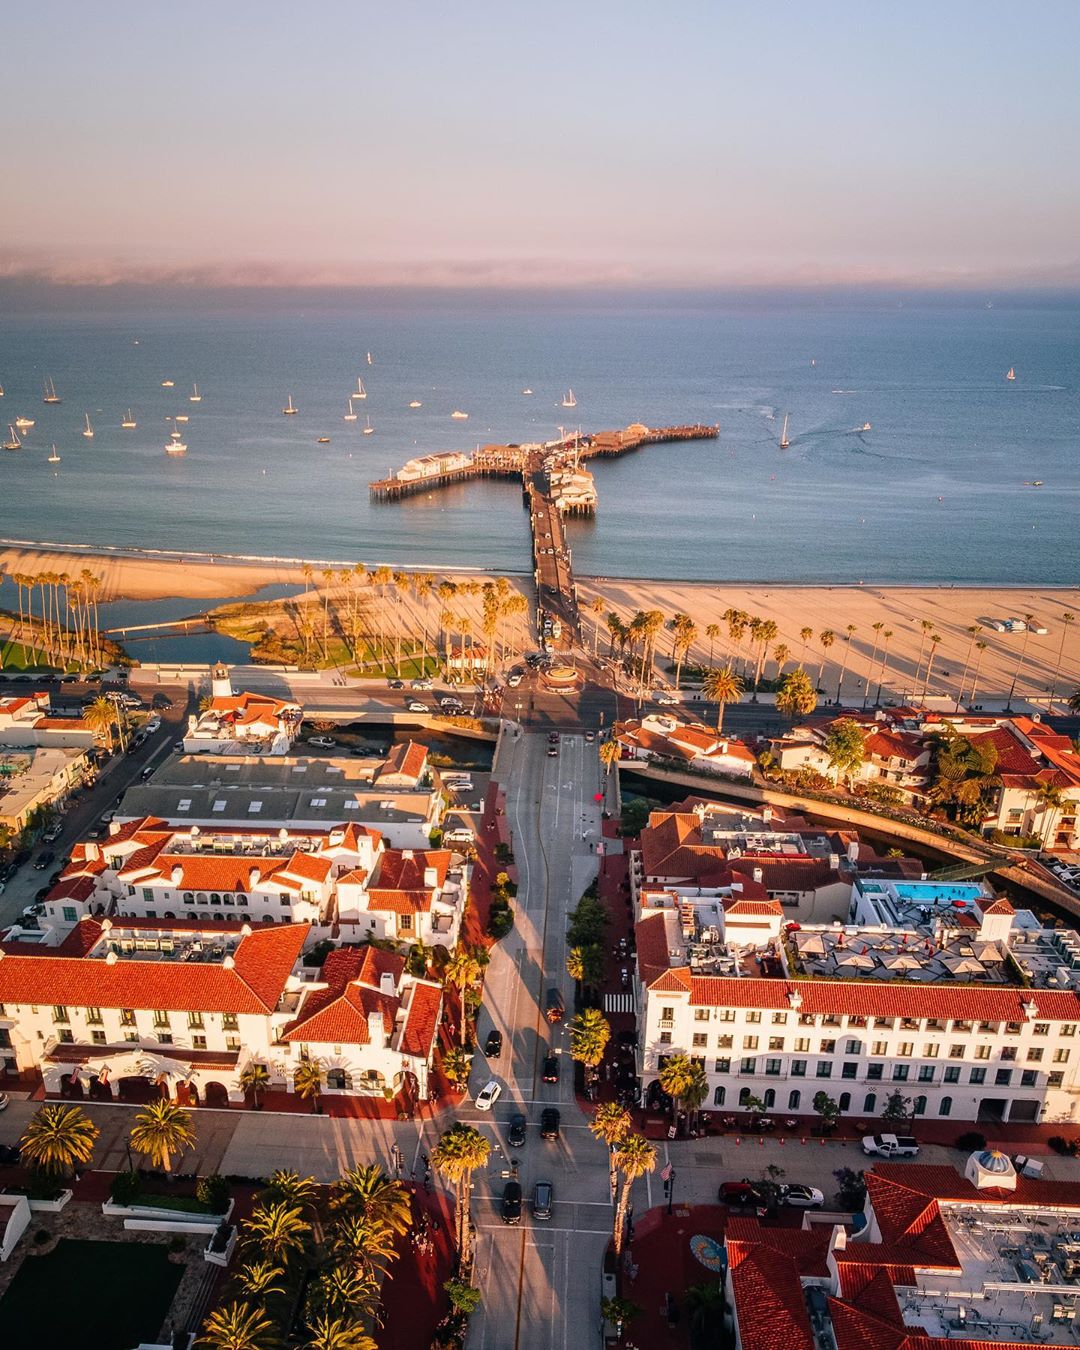 Aerial View of the Pier in Santa Barbara, CA. Photo by Instagram user @jadonwongg